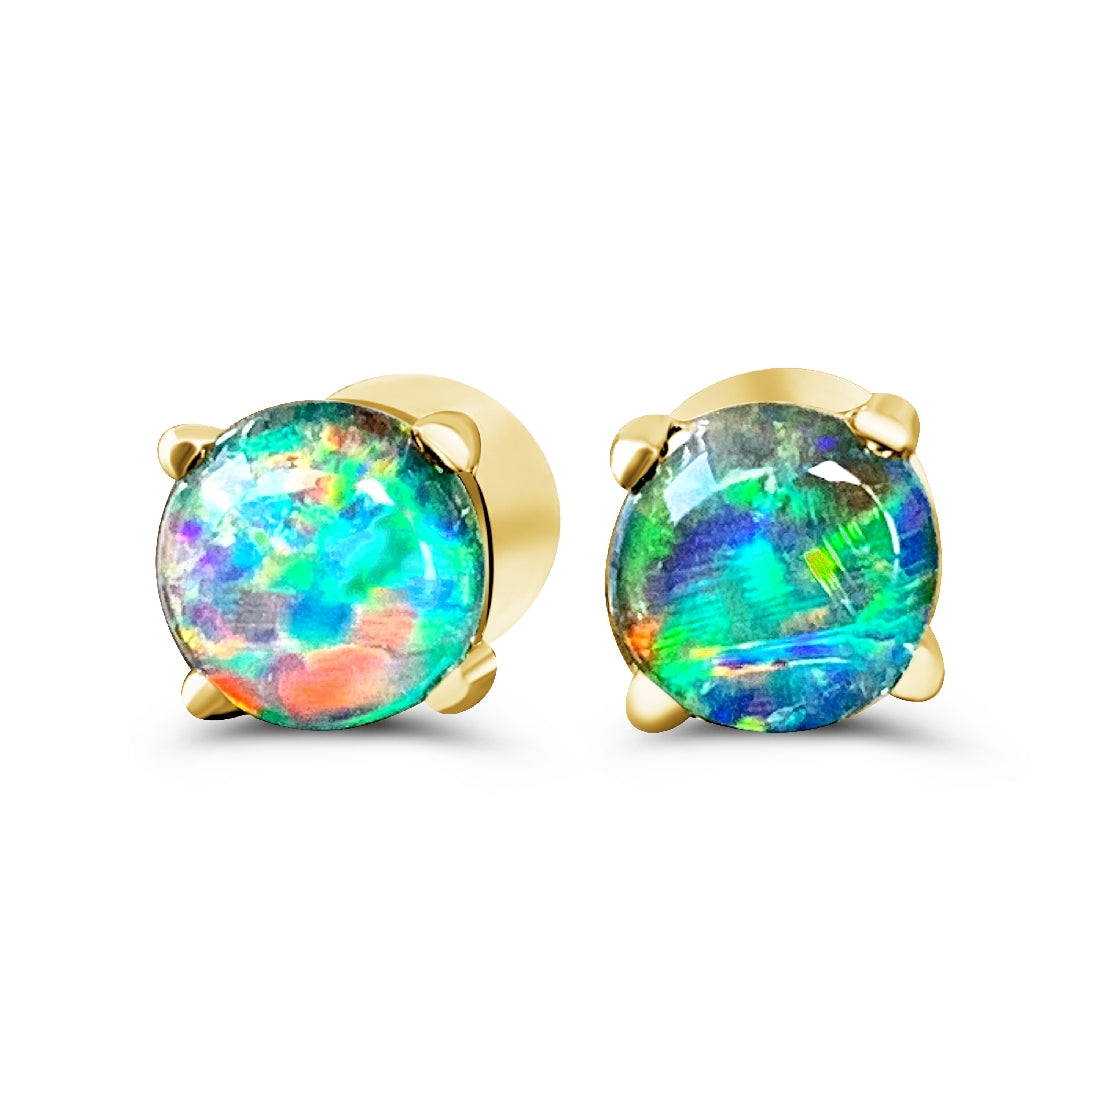 9kt Yellow Gold Opal triplet 5mm studs - Masterpiece Jewellery Opal & Gems Sydney Australia | Online Shop